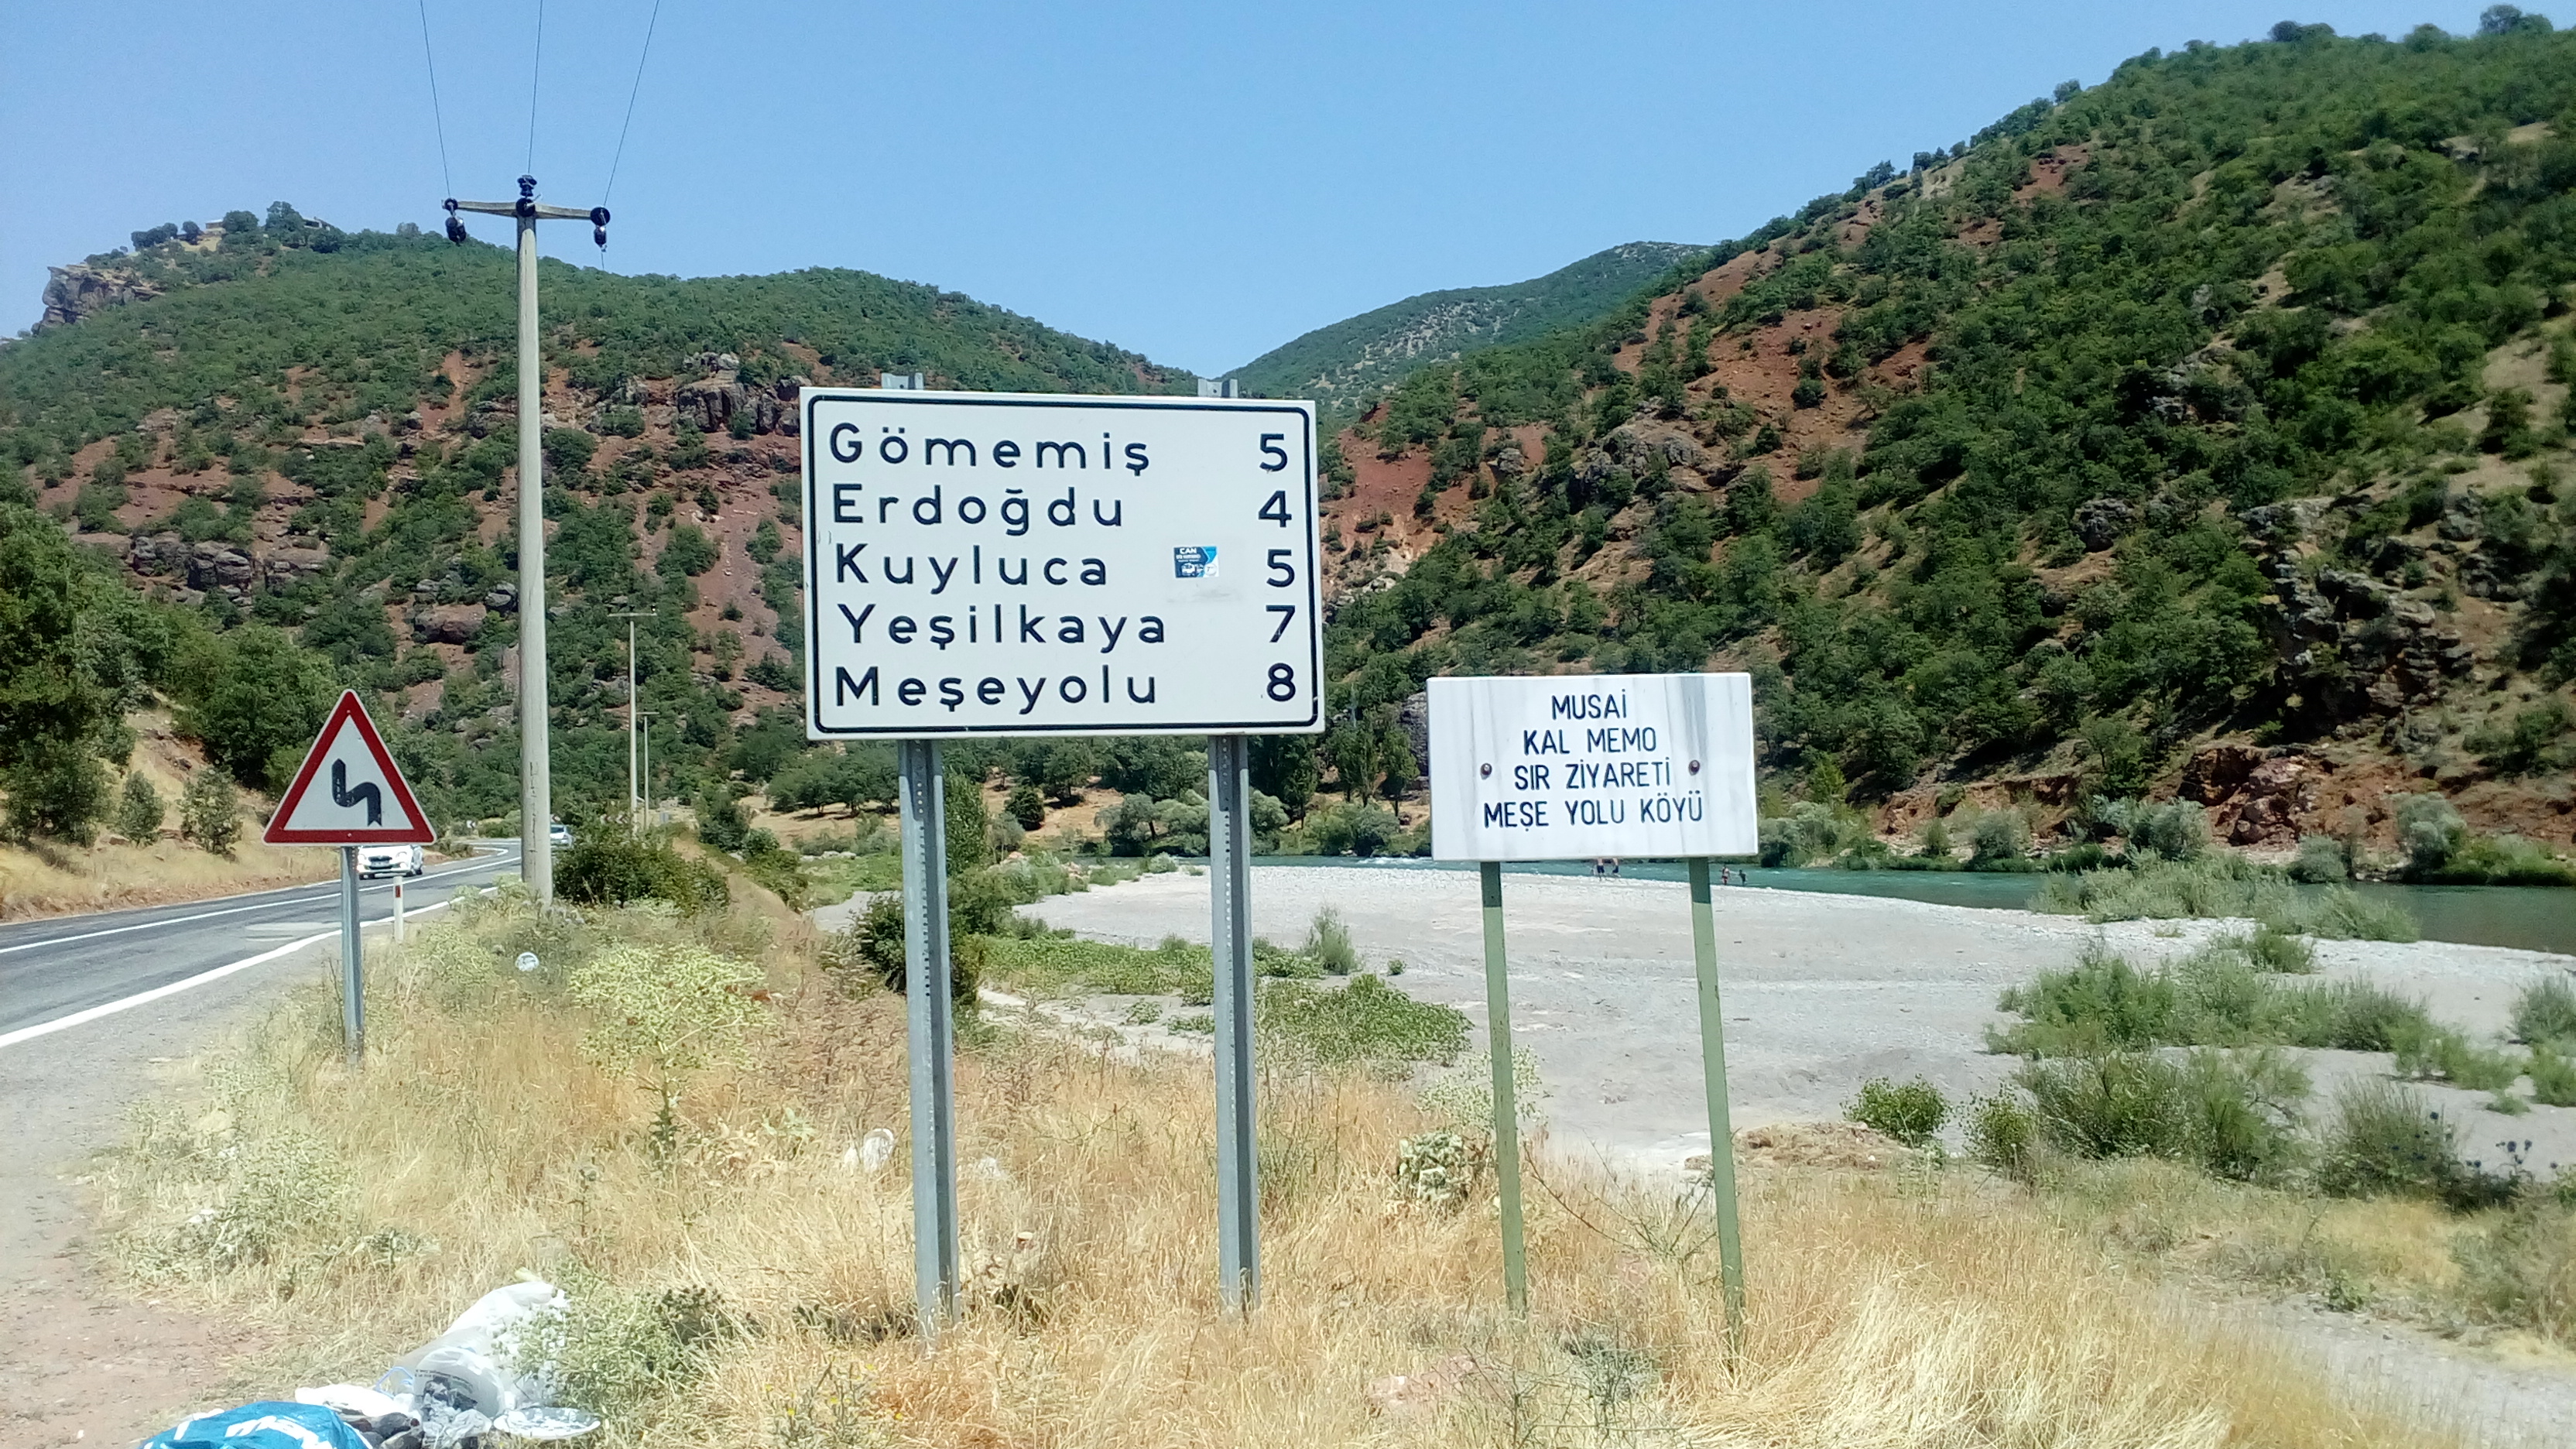 Tunceli Erdoğdu, Gömemiş, Kuyluca, Yeşilkaya ve Meşeyolu  köyleri tabelada yanlış sıralanmış (Uzaklıklar gerçeği yansıtıyor mu?)